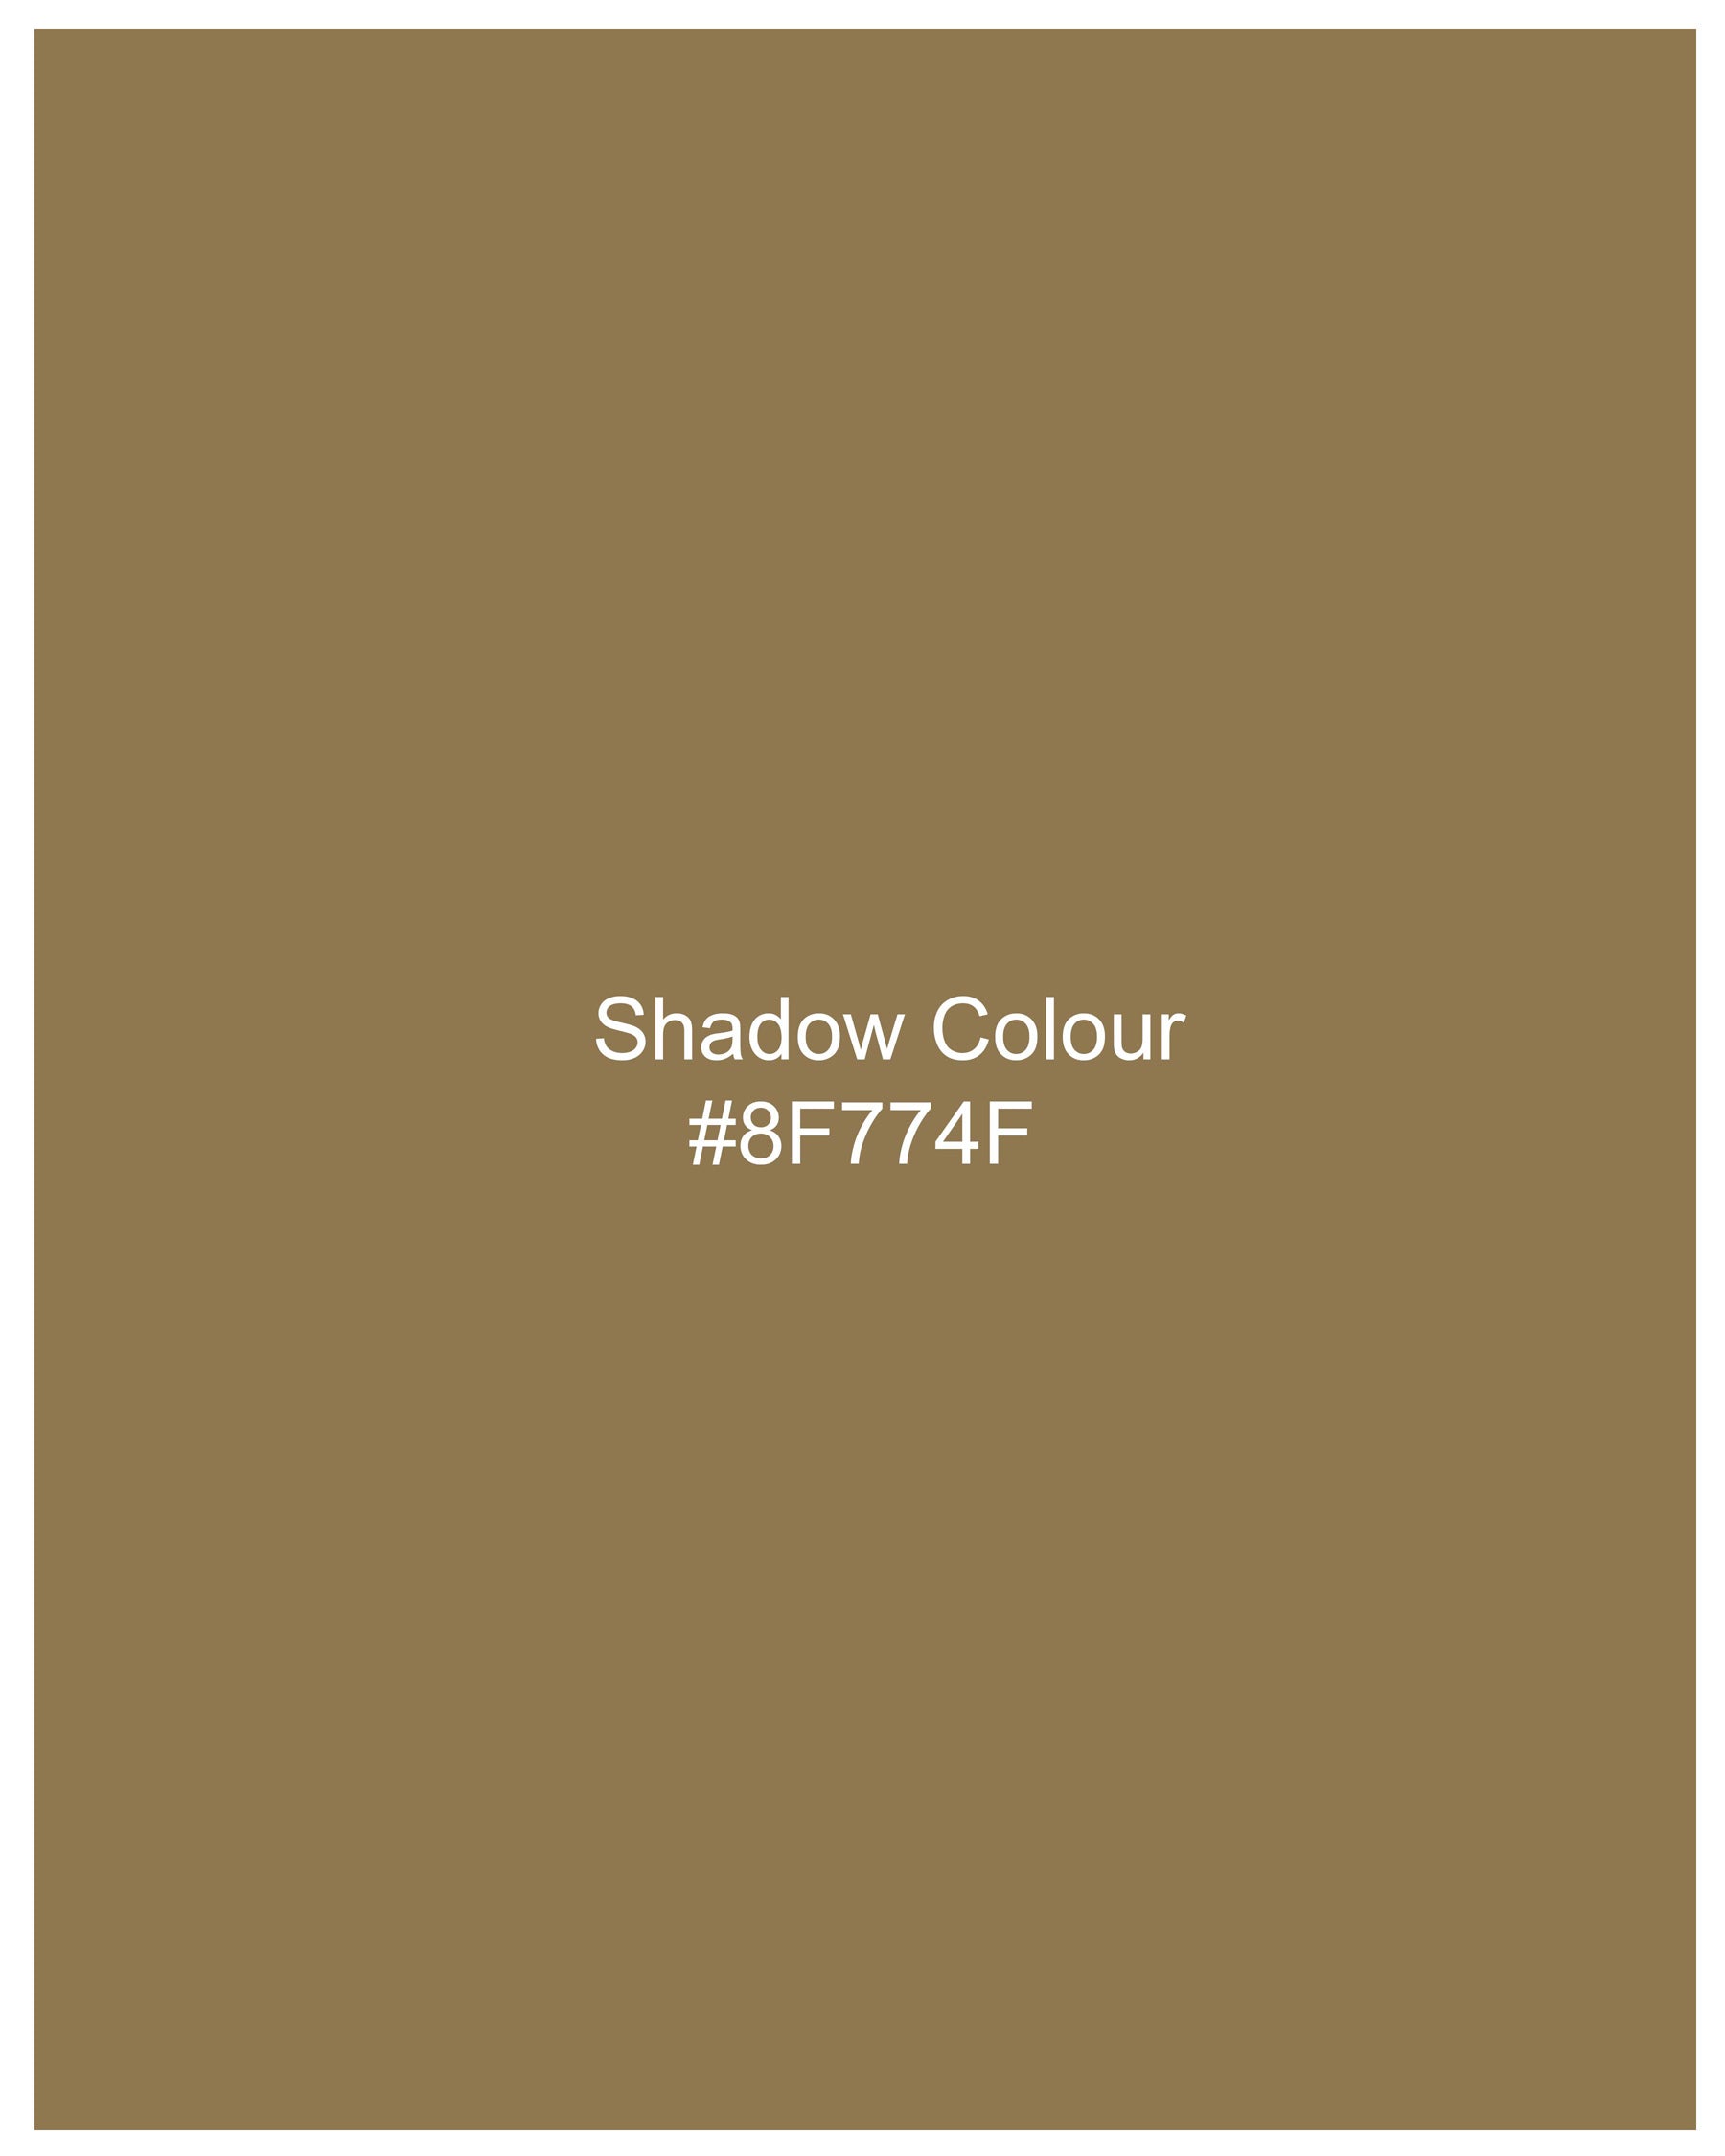 Shadow Brown Premium Cotton Pant T2132-28, T2132-30, T2132-32, T2132-34, T2132-36, T2132-38, T2132-40, T2132-42, T2132-44